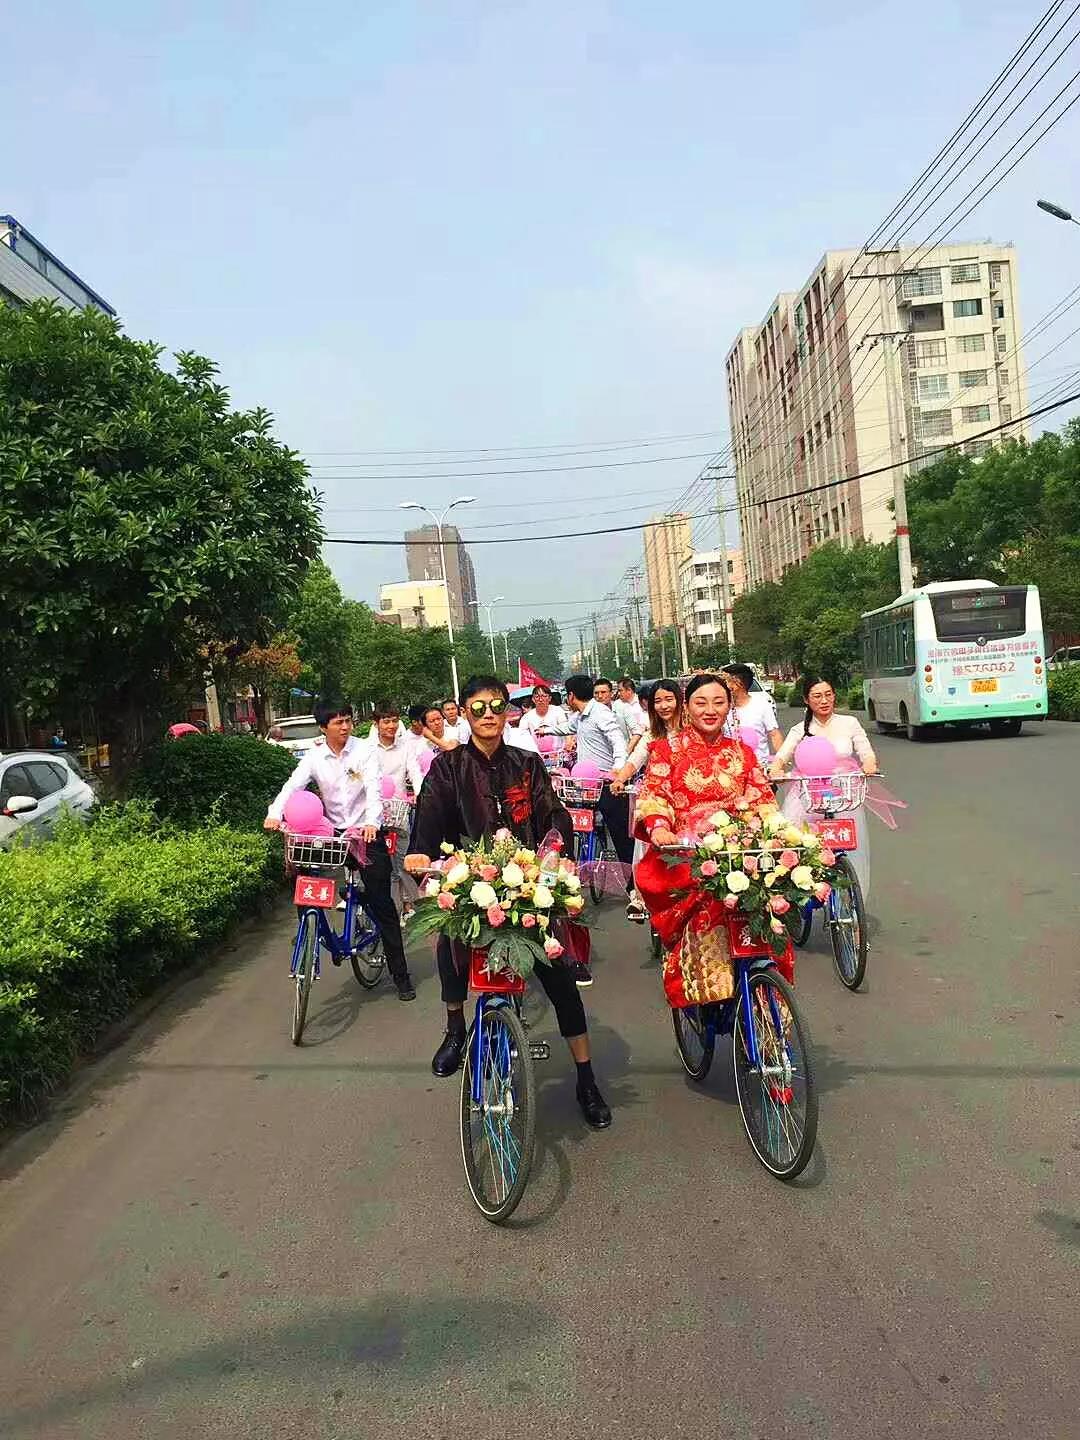 光山新娘骑着文明单车去结婚,笑靥如花被赞好